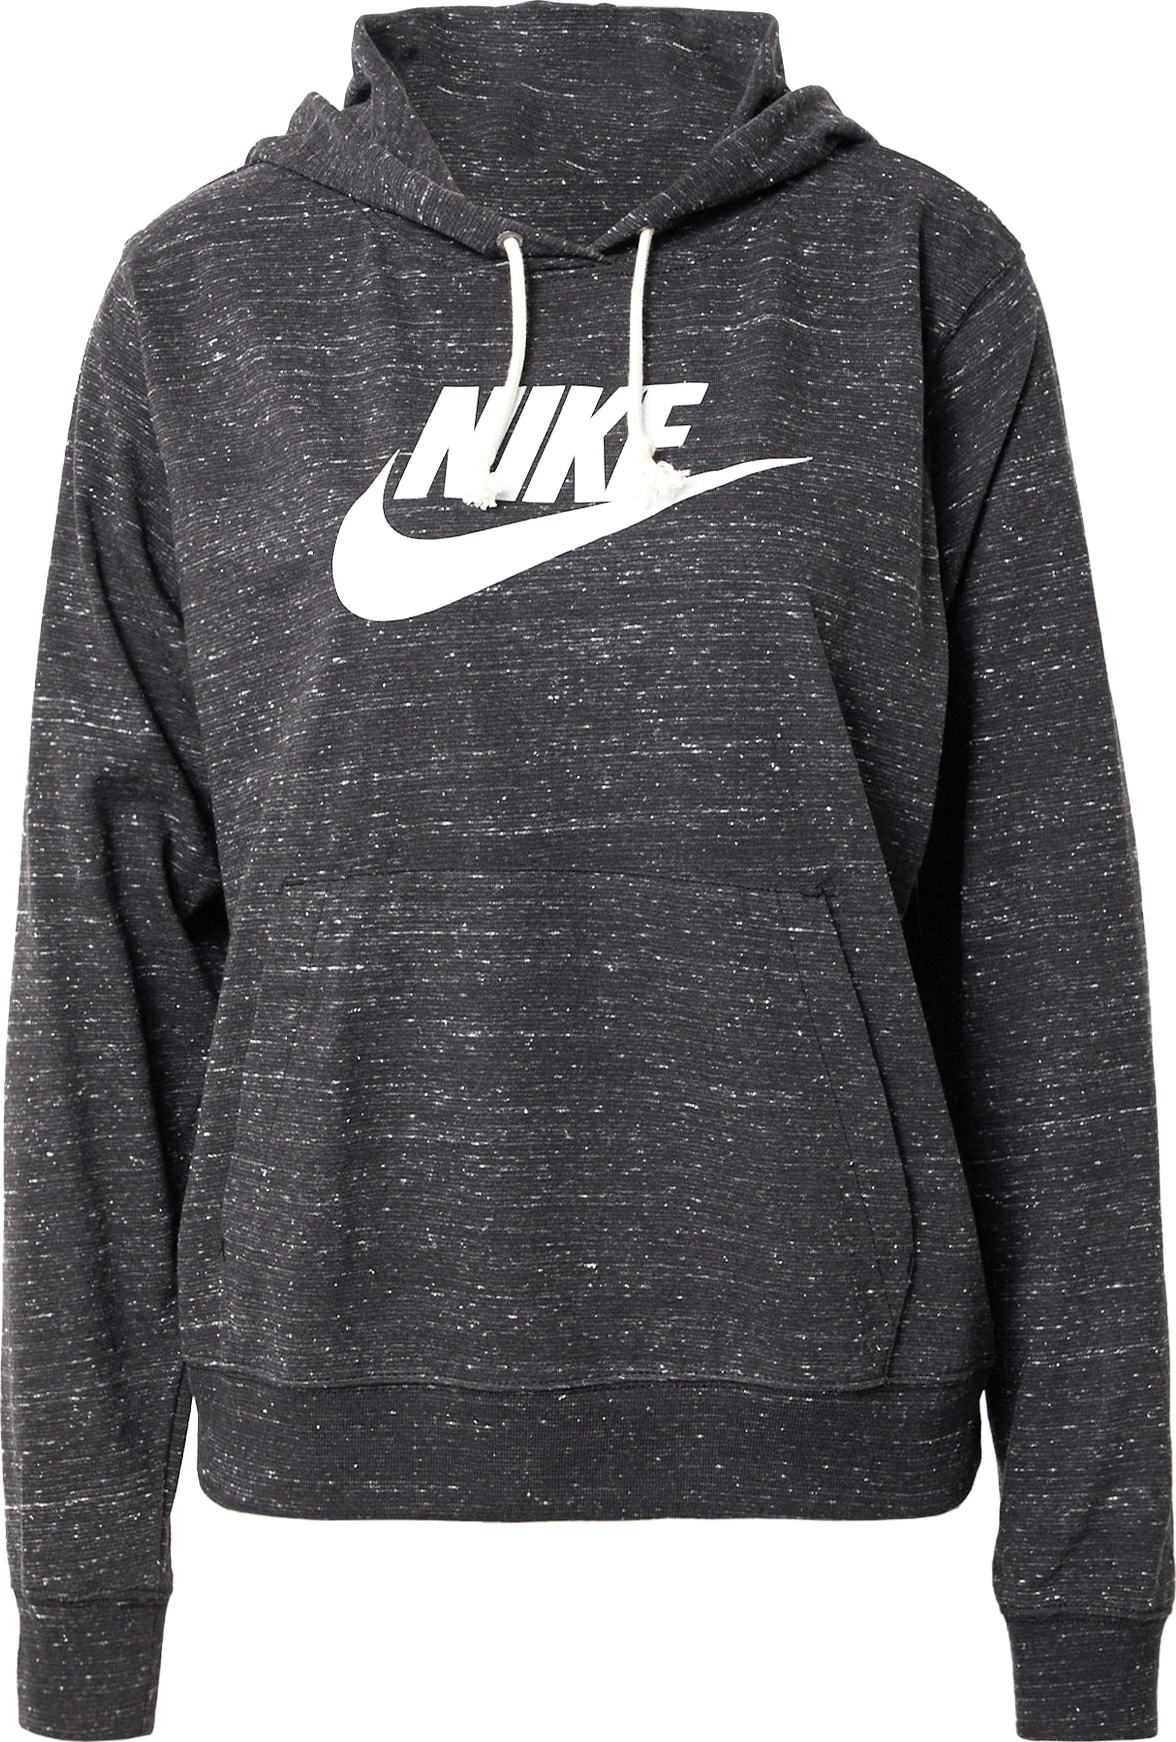 Mikina Nike Sportswear černý melír / bílá